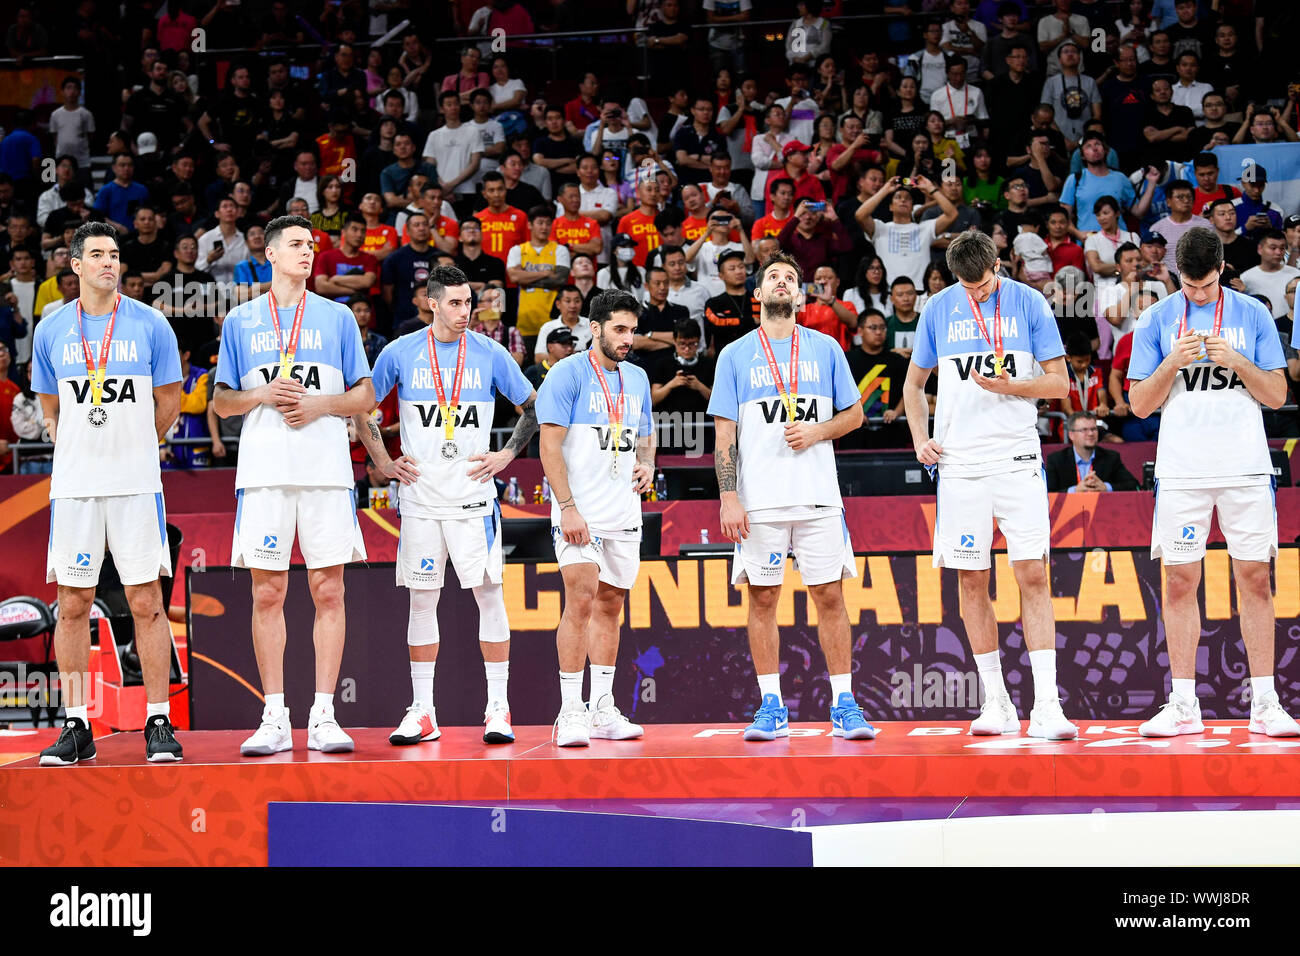 Spieler aus Argentinien gewann den zweiten Platz der 2019 FIBA Basketball-WM in Peking, China, 15. September 2019. Spanien besiegt Argentinien 2019 FIBA Basketball WM-Finale 95-75. Stockfoto